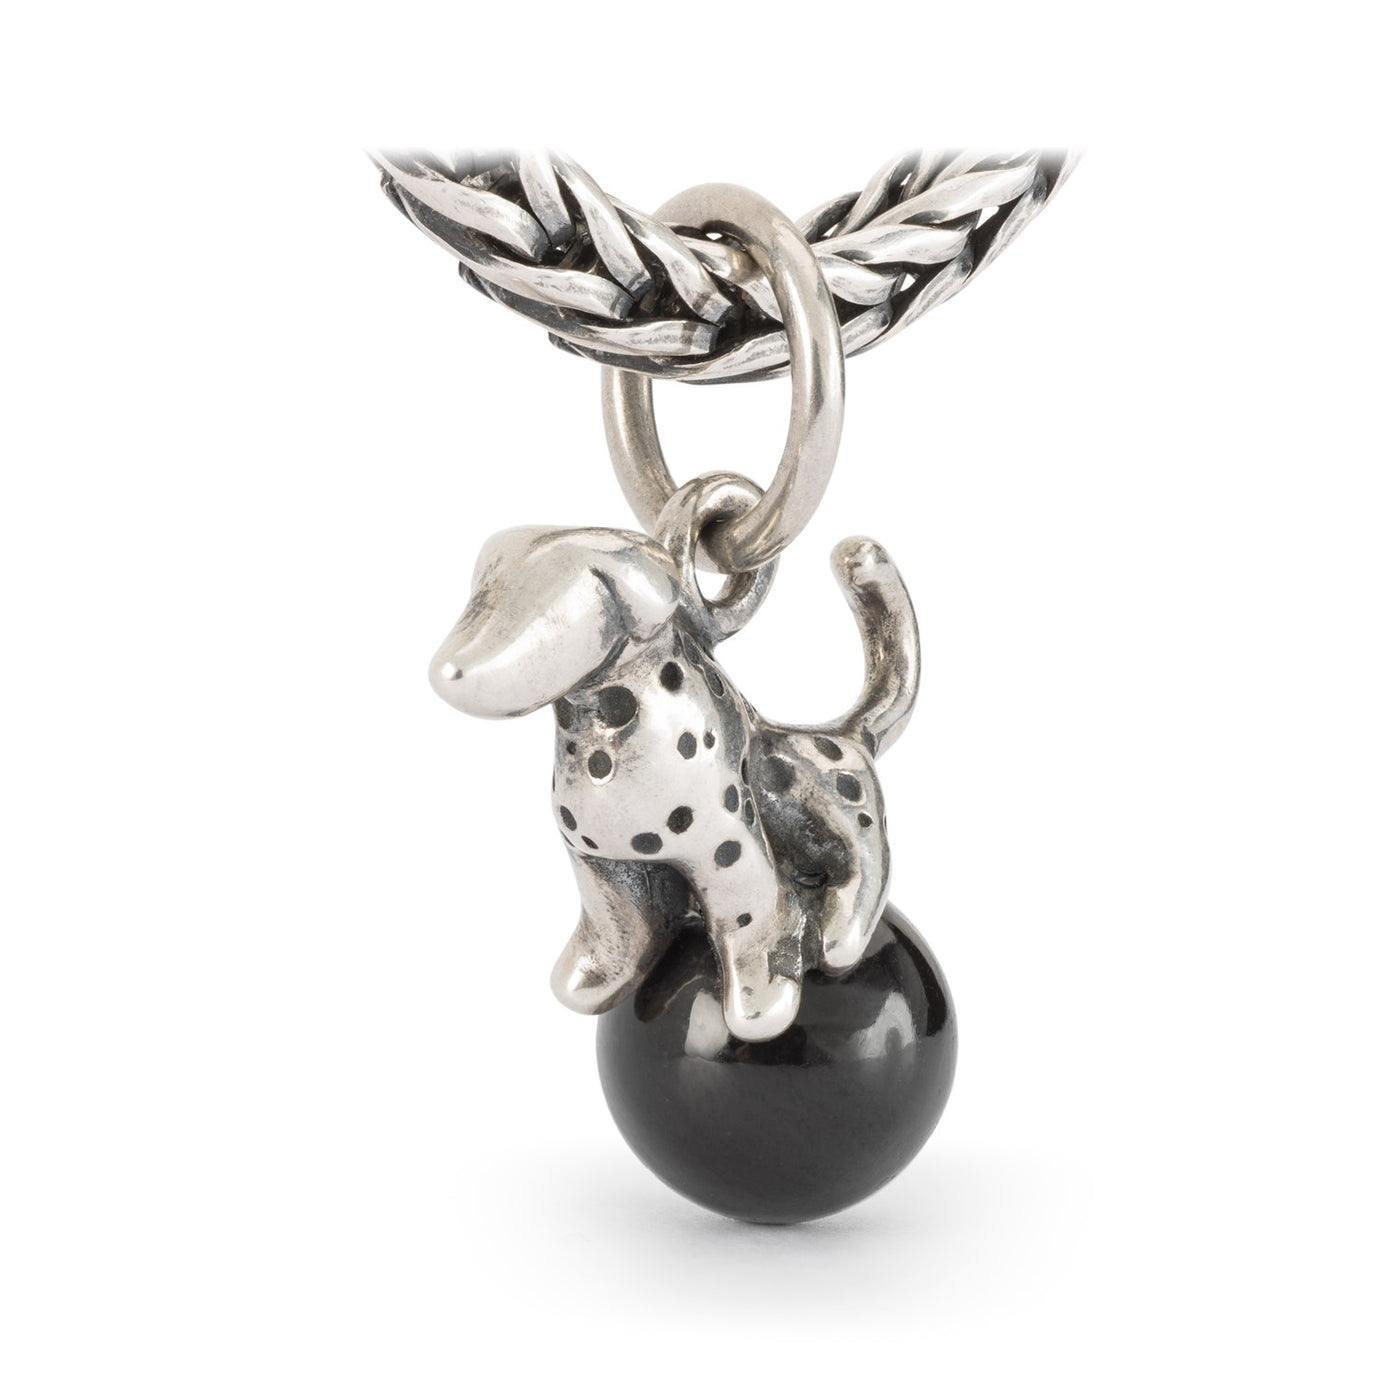 Pendentif chien en argent pour bijoux dalmatien sur une boule d'onyx noir.